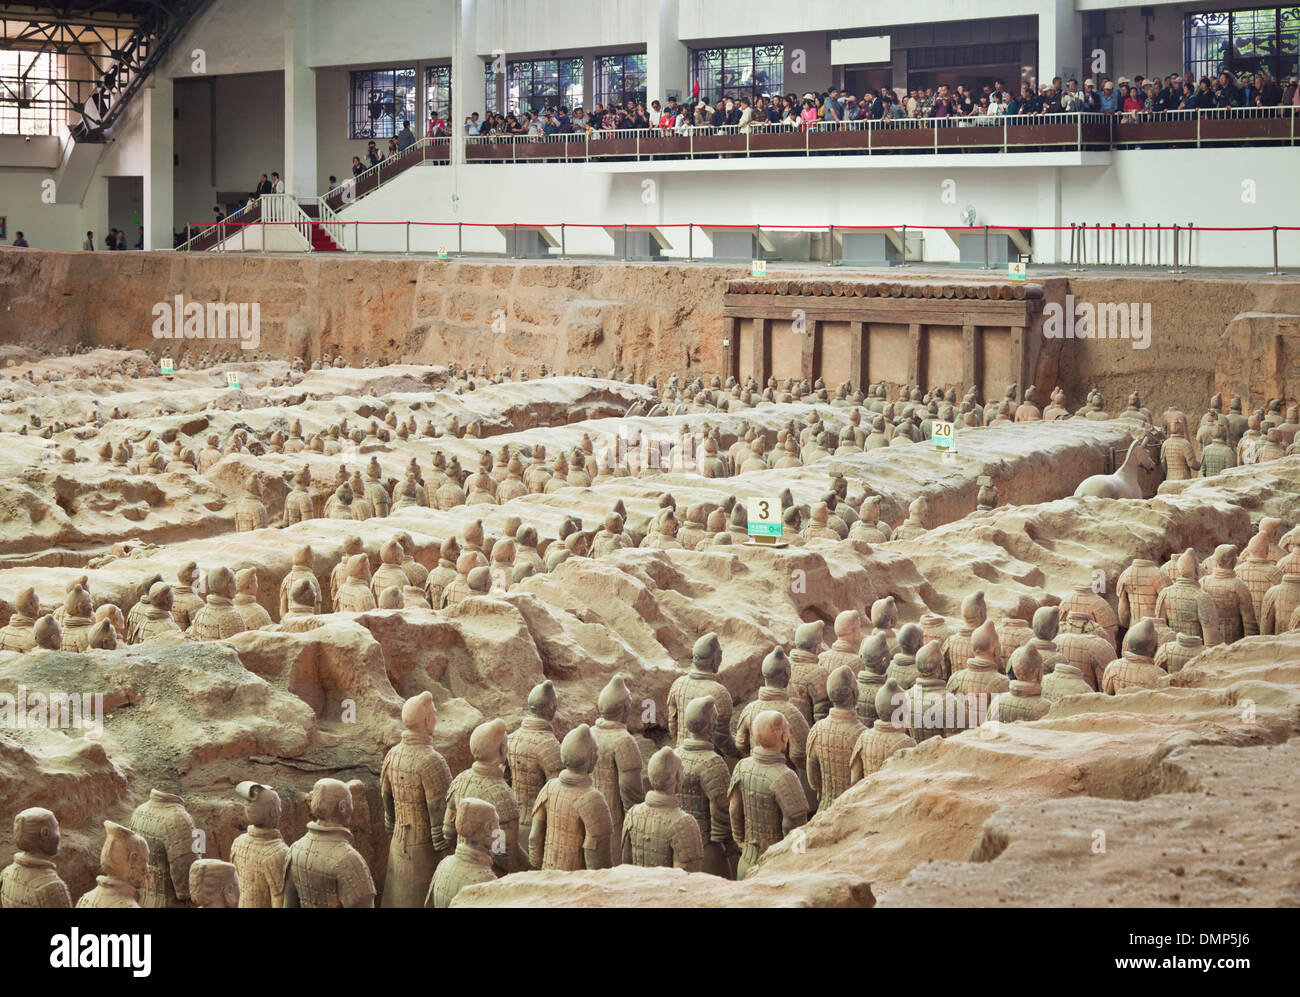 À l'intérieur du musée de l'armée de guerriers en terre cuite Pit Numéro 1, Xi'an, province du Shaanxi, Chine, République populaire de Chine, l'Asie Banque D'Images